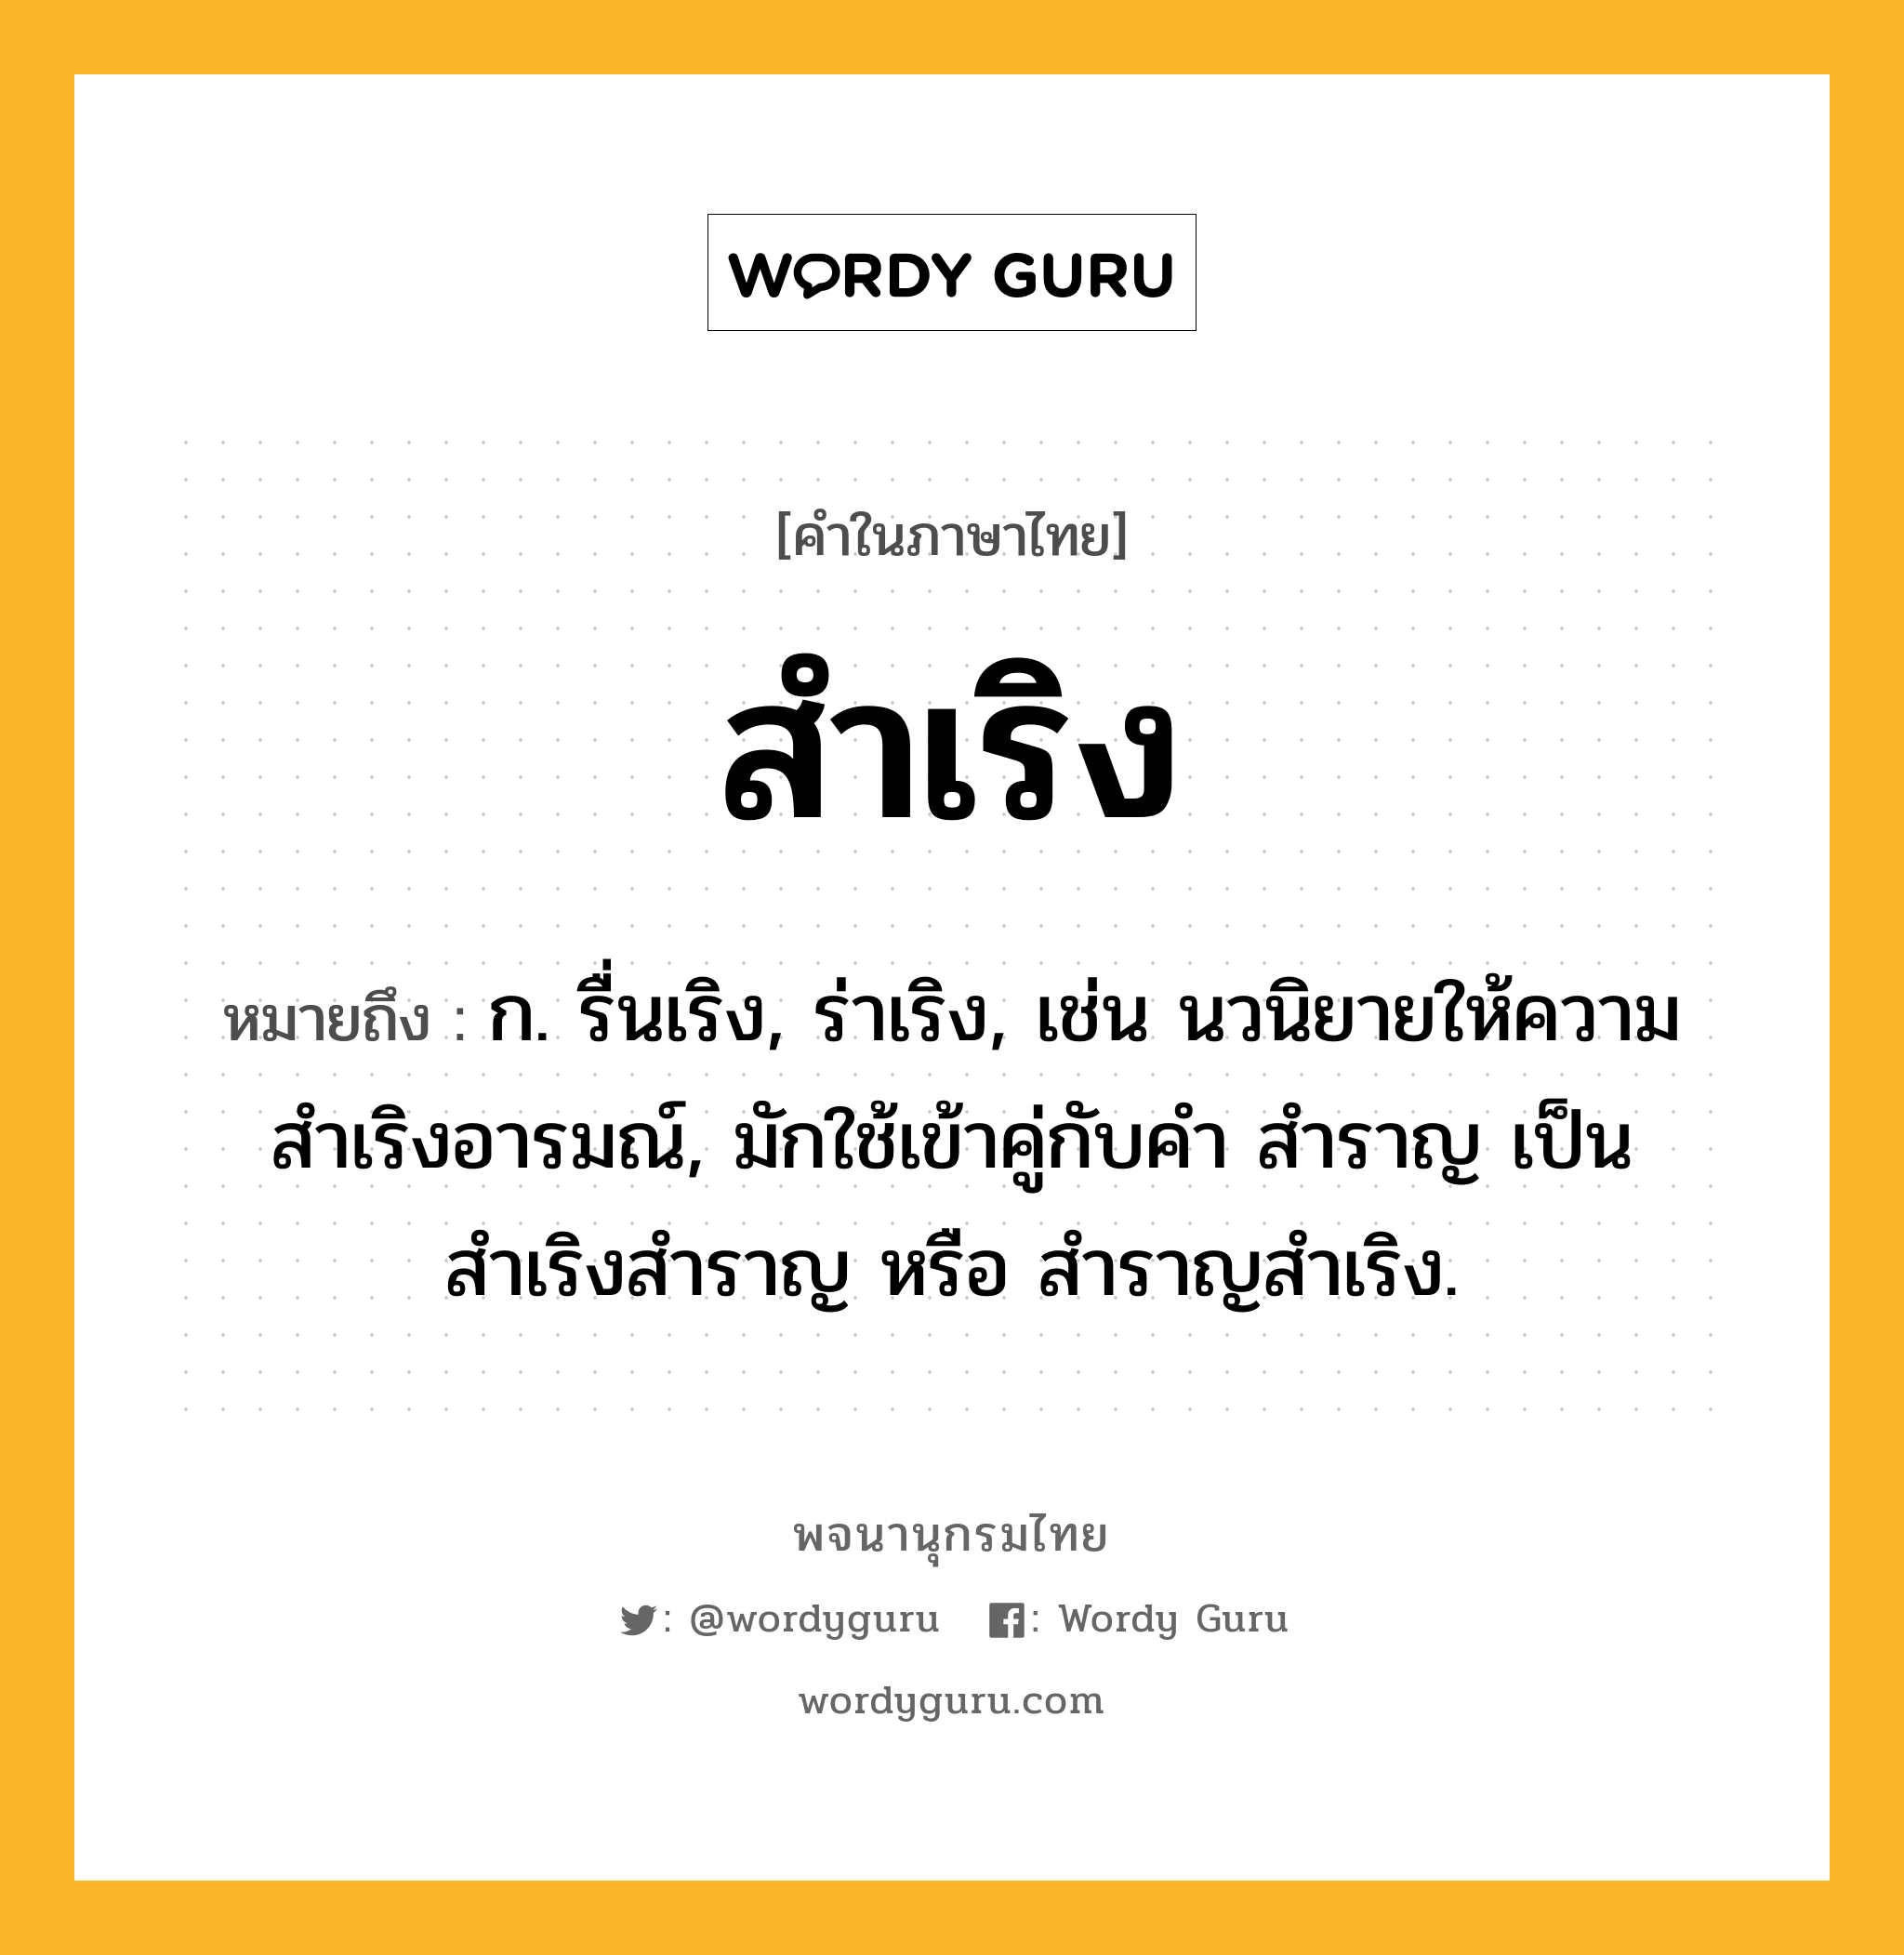 สำเริง ความหมาย หมายถึงอะไร?, คำในภาษาไทย สำเริง หมายถึง ก. รื่นเริง, ร่าเริง, เช่น นวนิยายให้ความสำเริงอารมณ์, มักใช้เข้าคู่กับคำ สำราญ เป็น สำเริงสำราญ หรือ สำราญสำเริง.